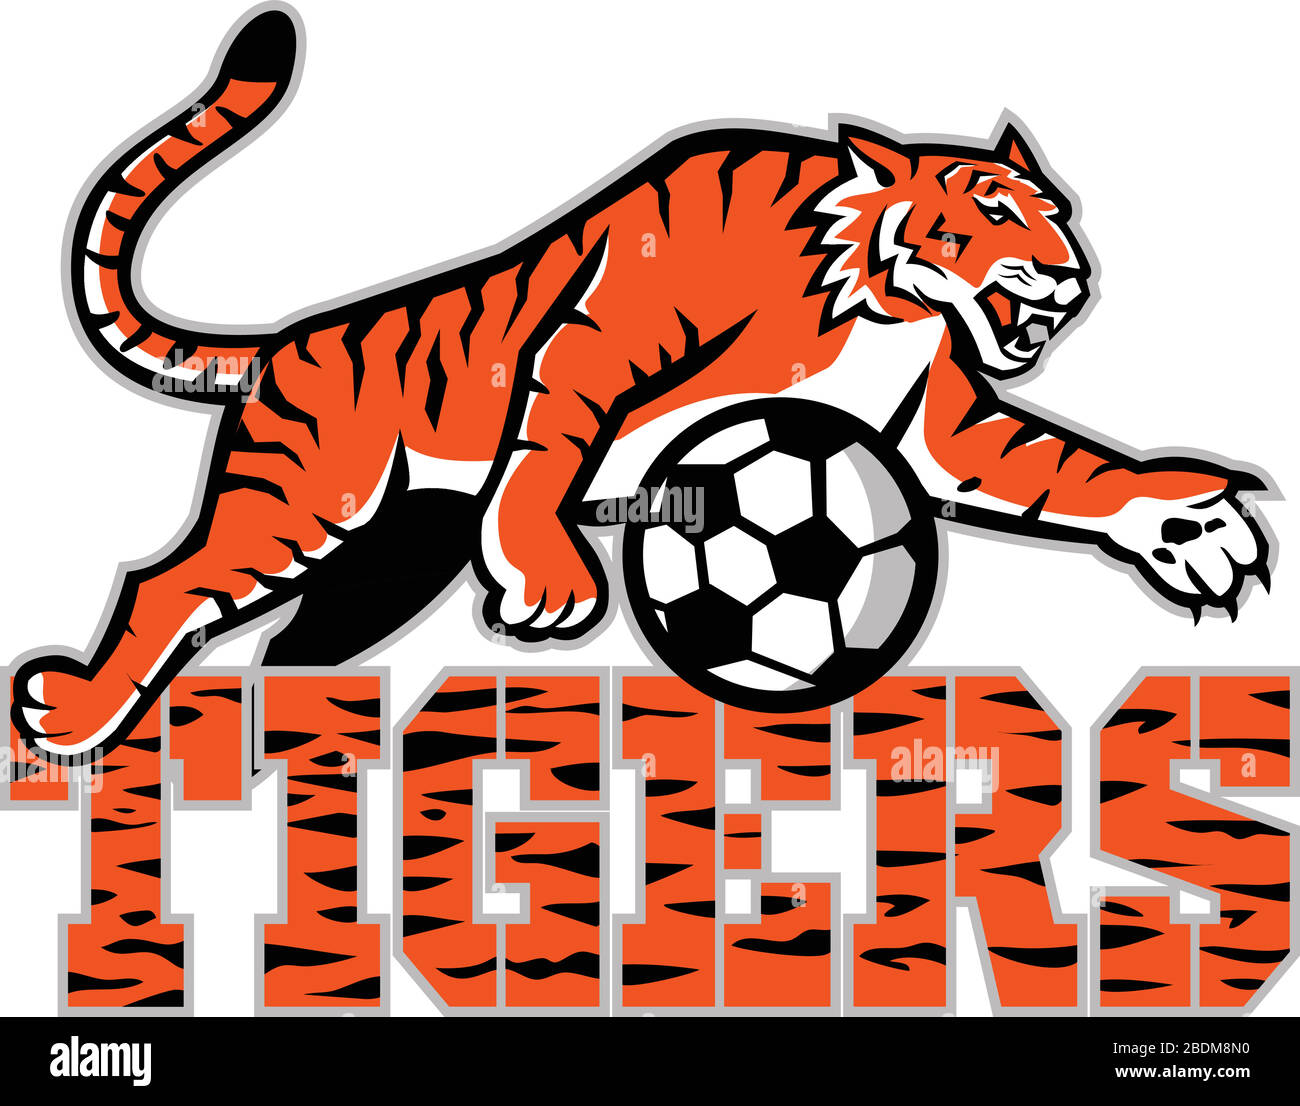 Icône mascotte illustration d'un tigre dribissant un ballon de football ou de football avec des mots tigres vus de côté sur un arrière-plan isolé dans le style rétro. Illustration de Vecteur